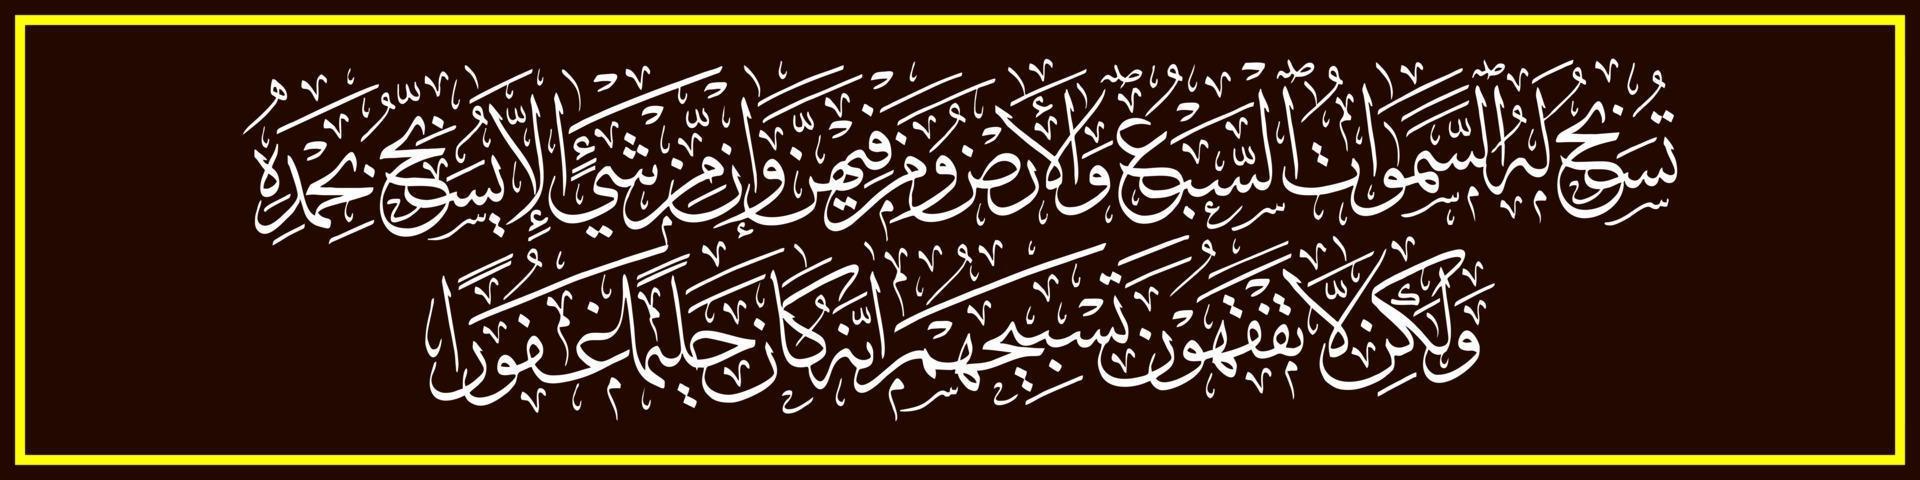 caligrafía árabe, al qur'an surah al isra 44, traducción los siete cielos, la tierra y todo lo que hay en ella glorifica a allah. y no hay más que gloriarse alabandole, vector